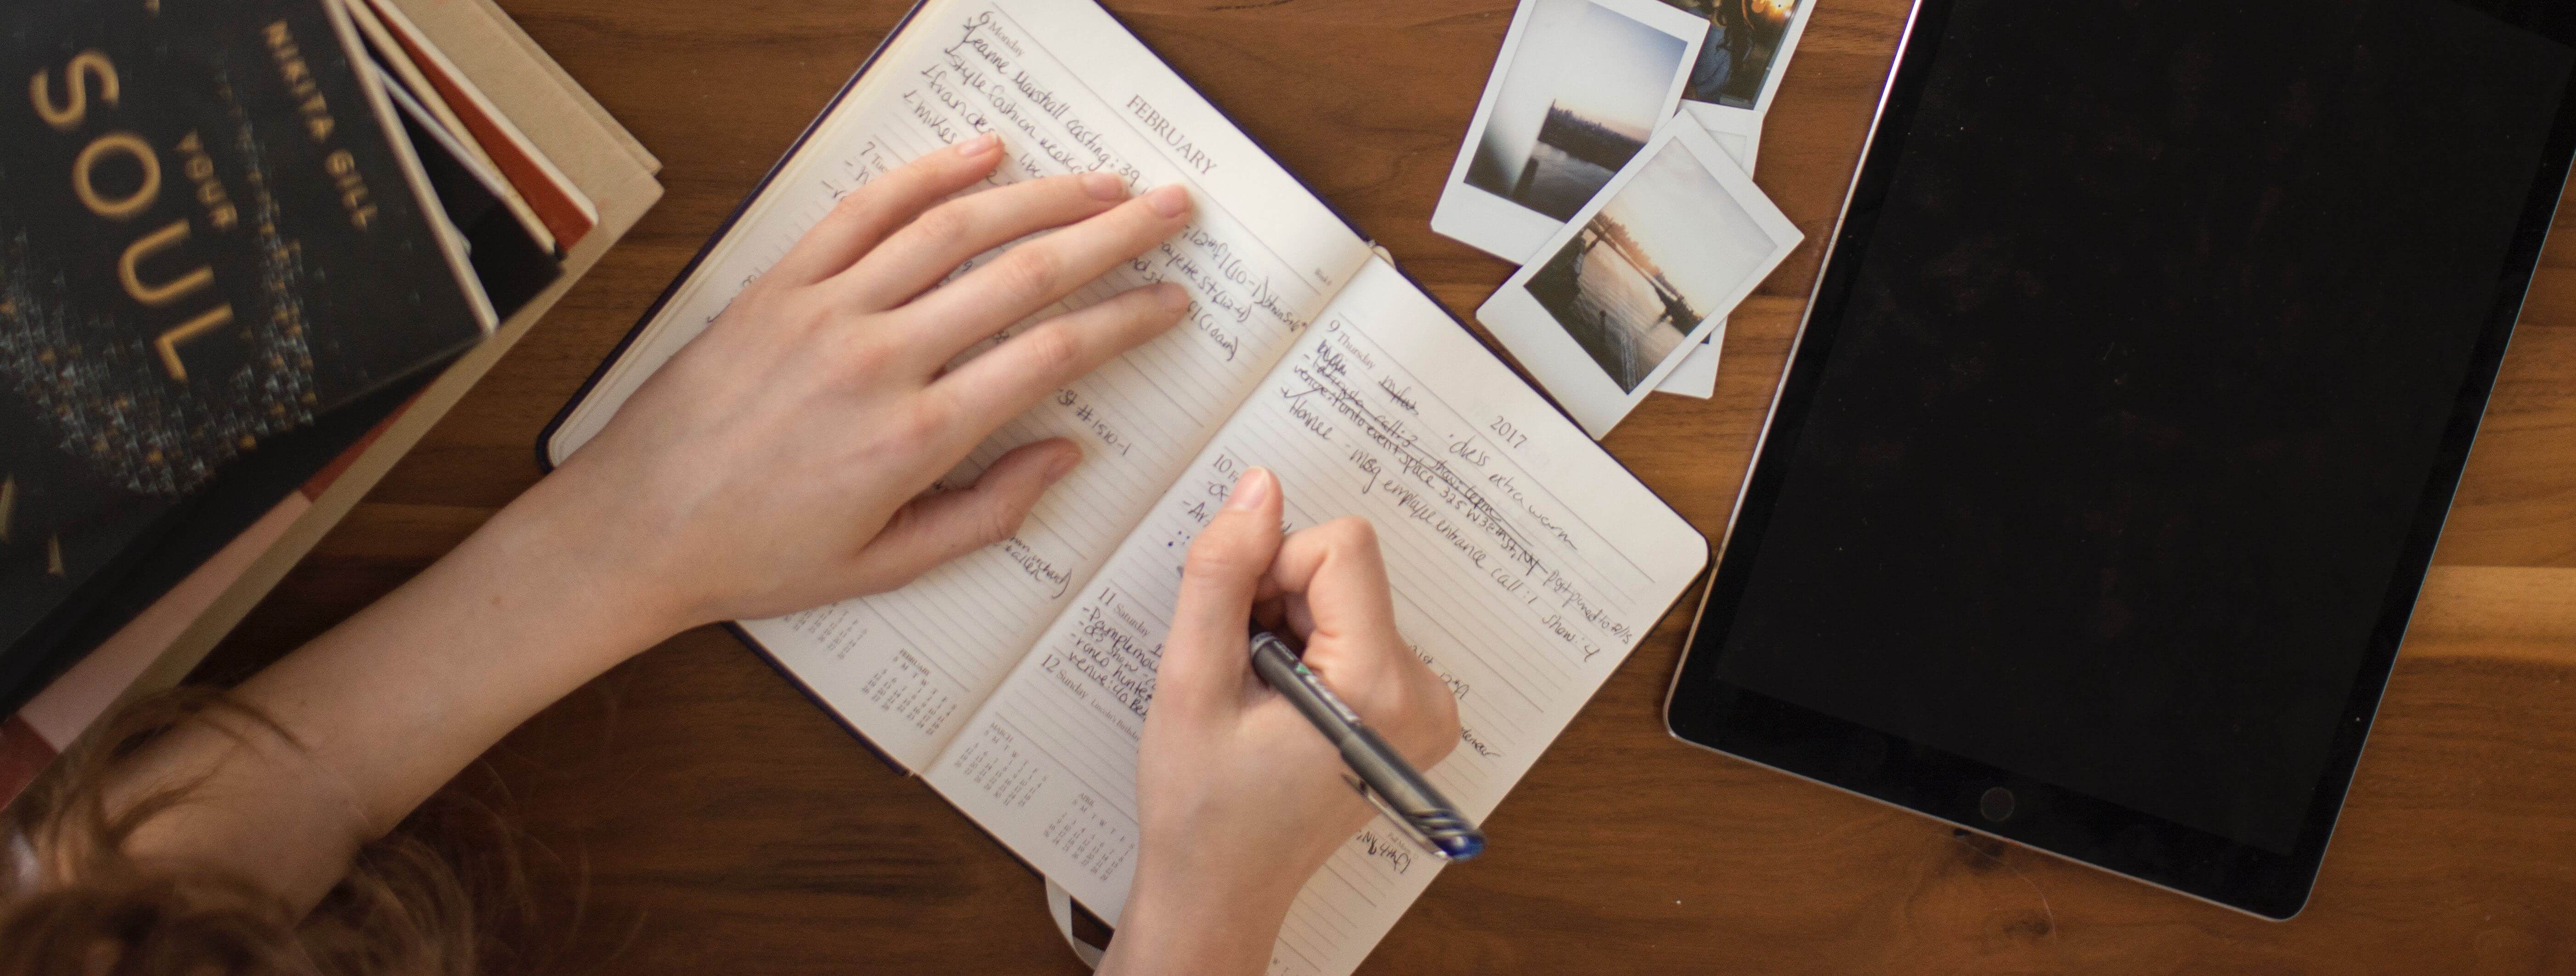 Advérbios - imagem de uma mesa com um caderno aberto e alguém escrevendo.